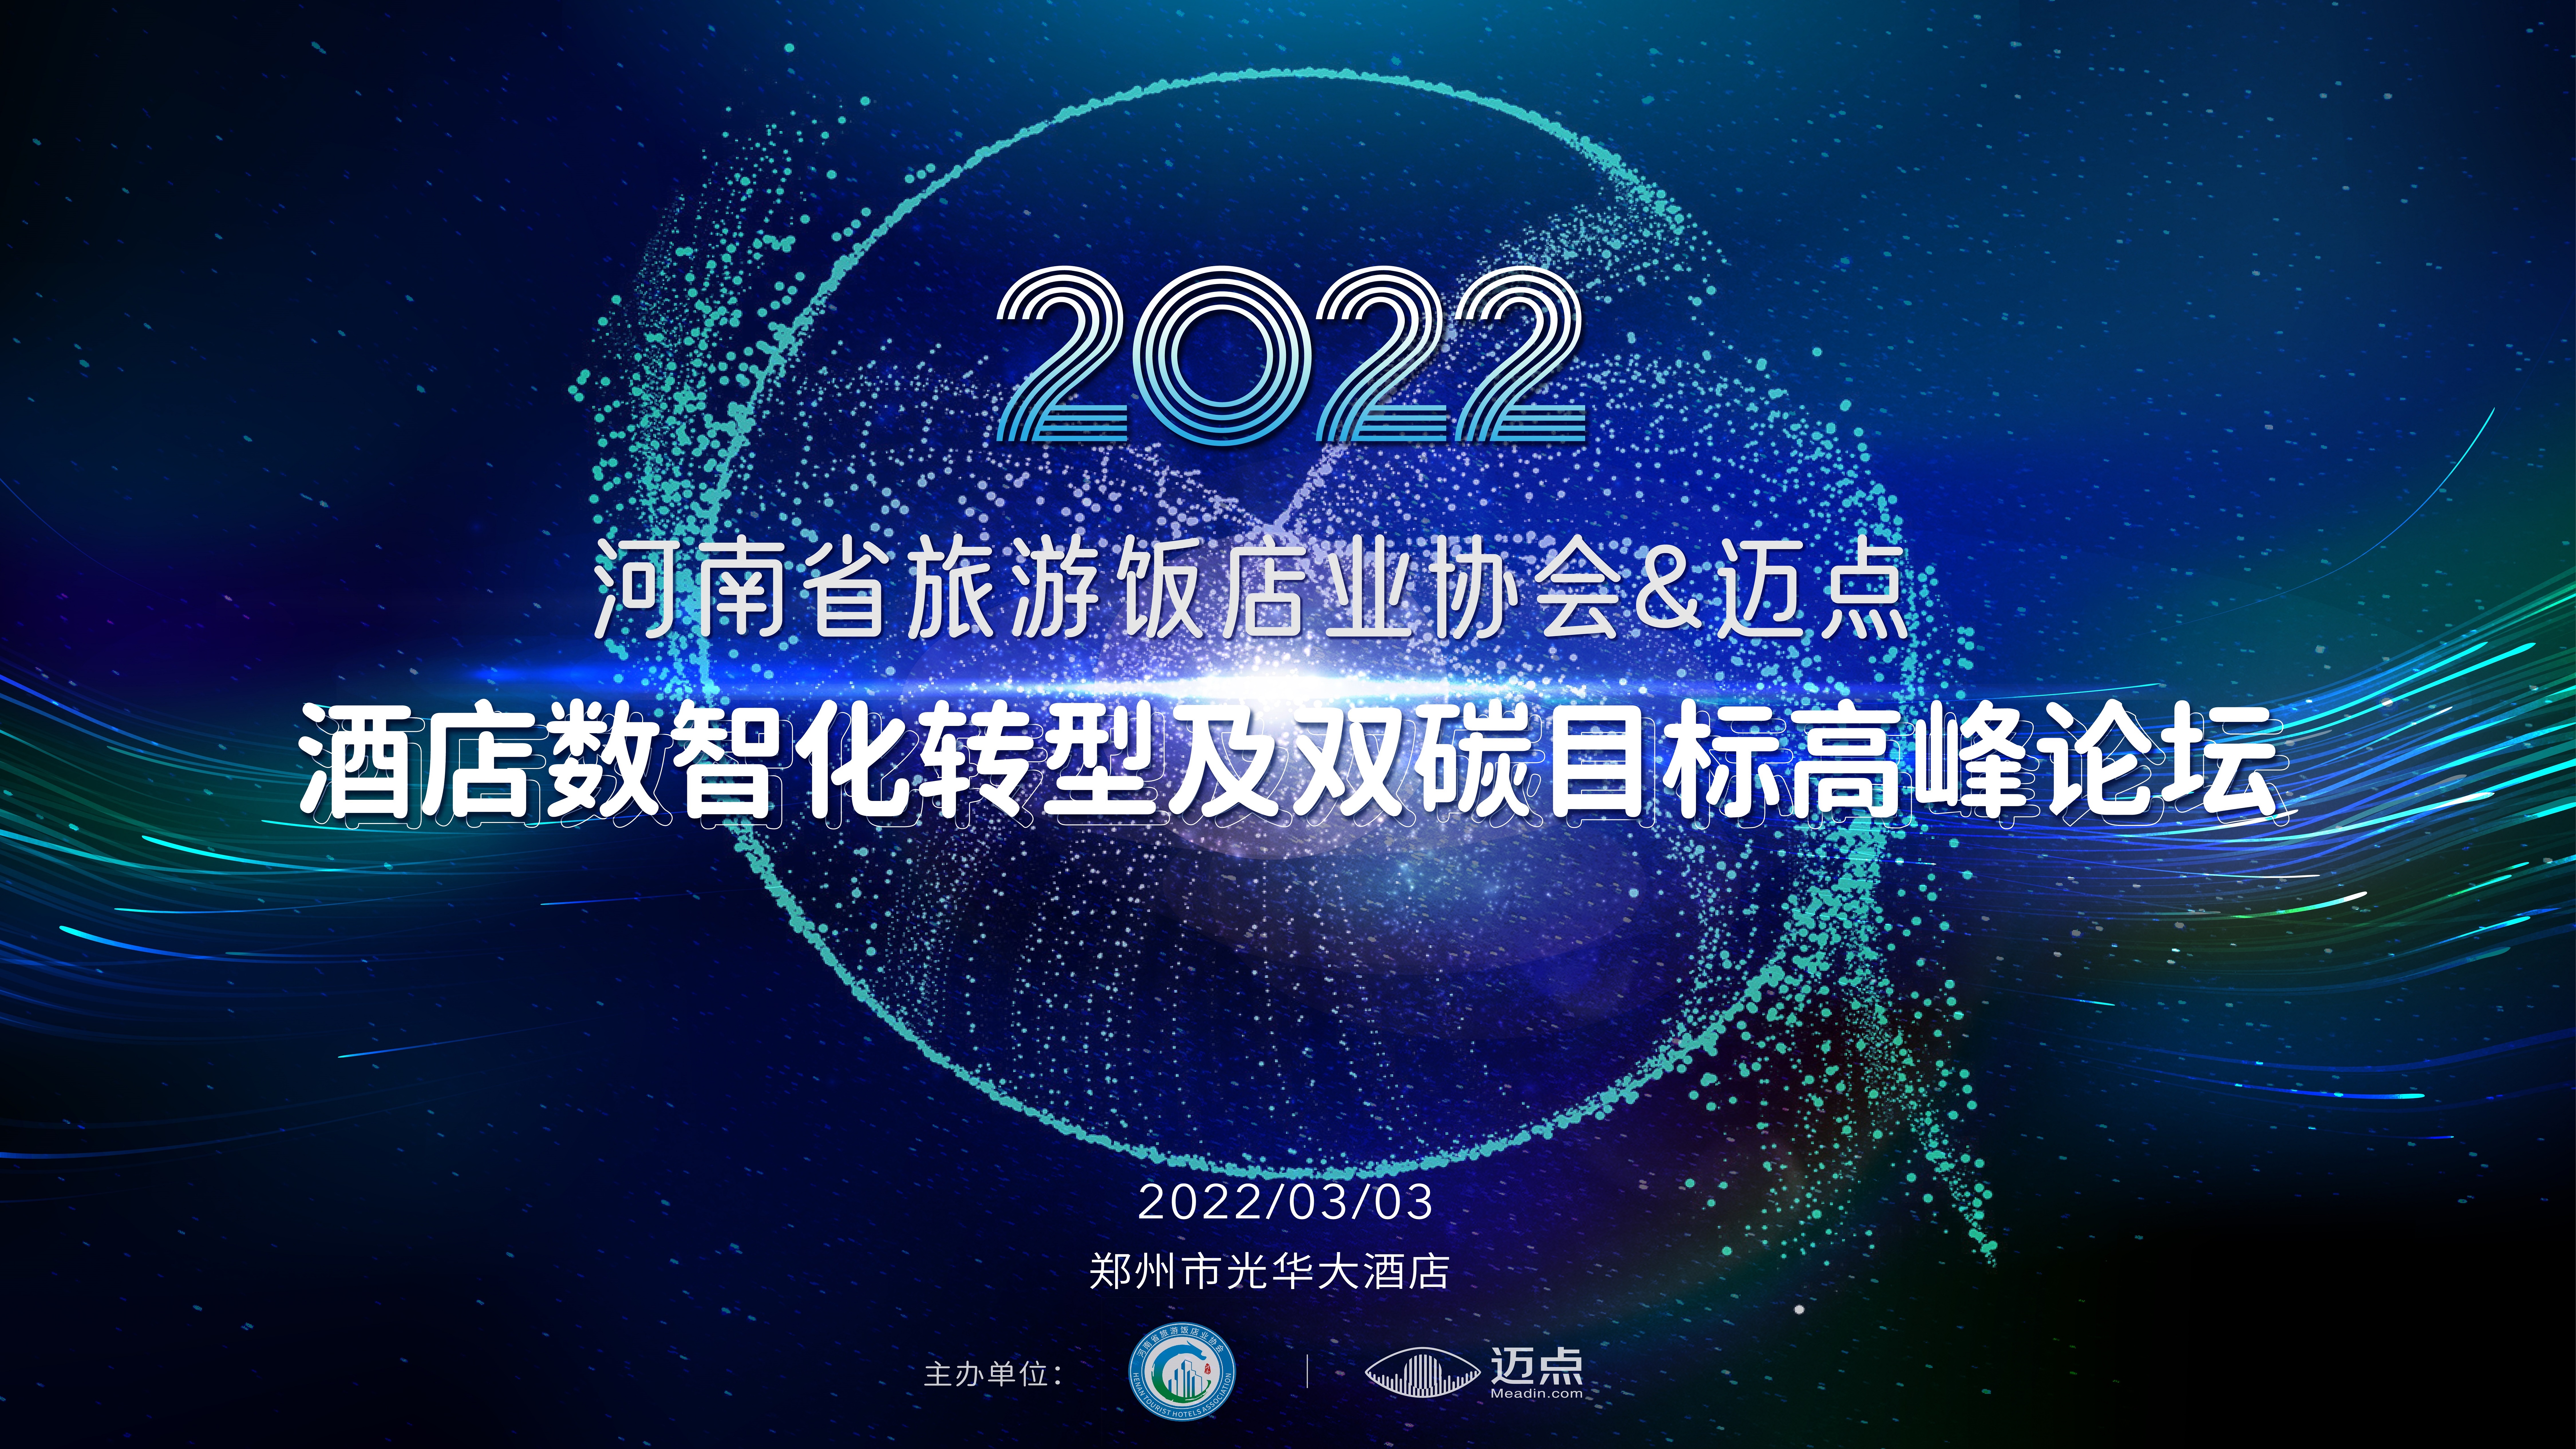 河南省游戏厅饭店业协会&迈点2022在线电子游戏网址数智化转型及双碳目标高峰论坛